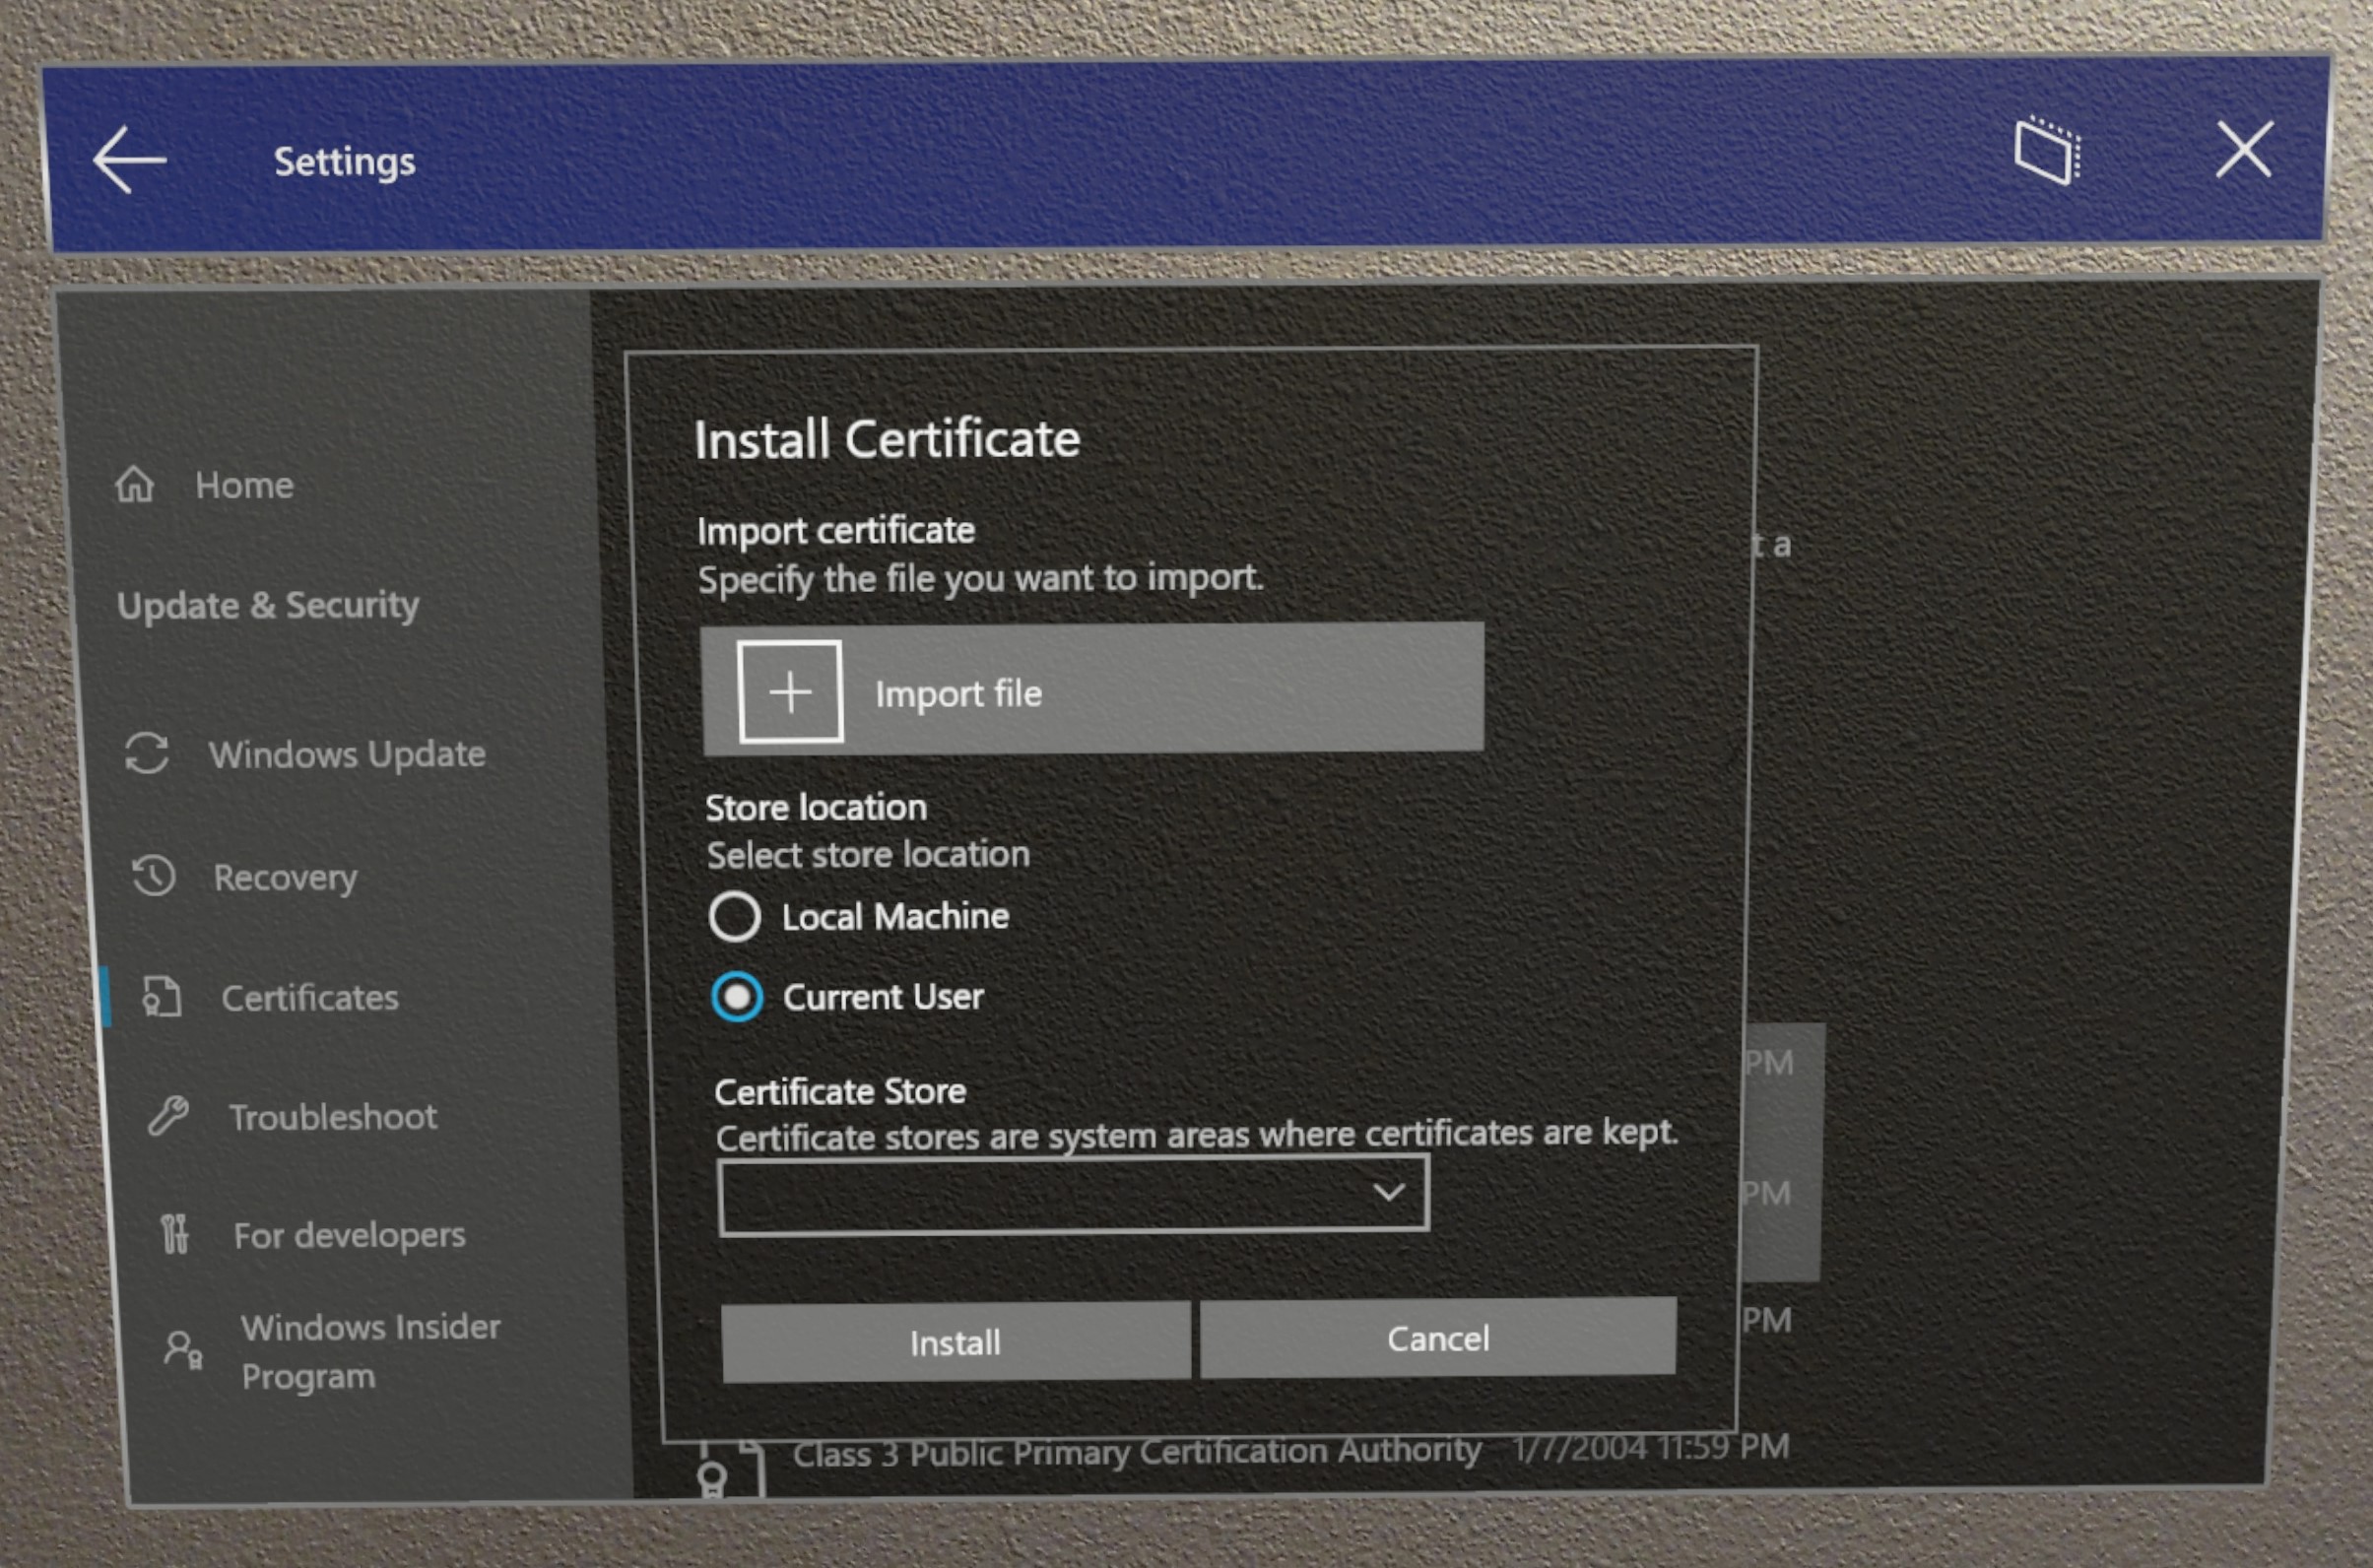 Afbeelding die laat zien hoe u de certificaatinterface gebruikt om een certificaat te installeren.